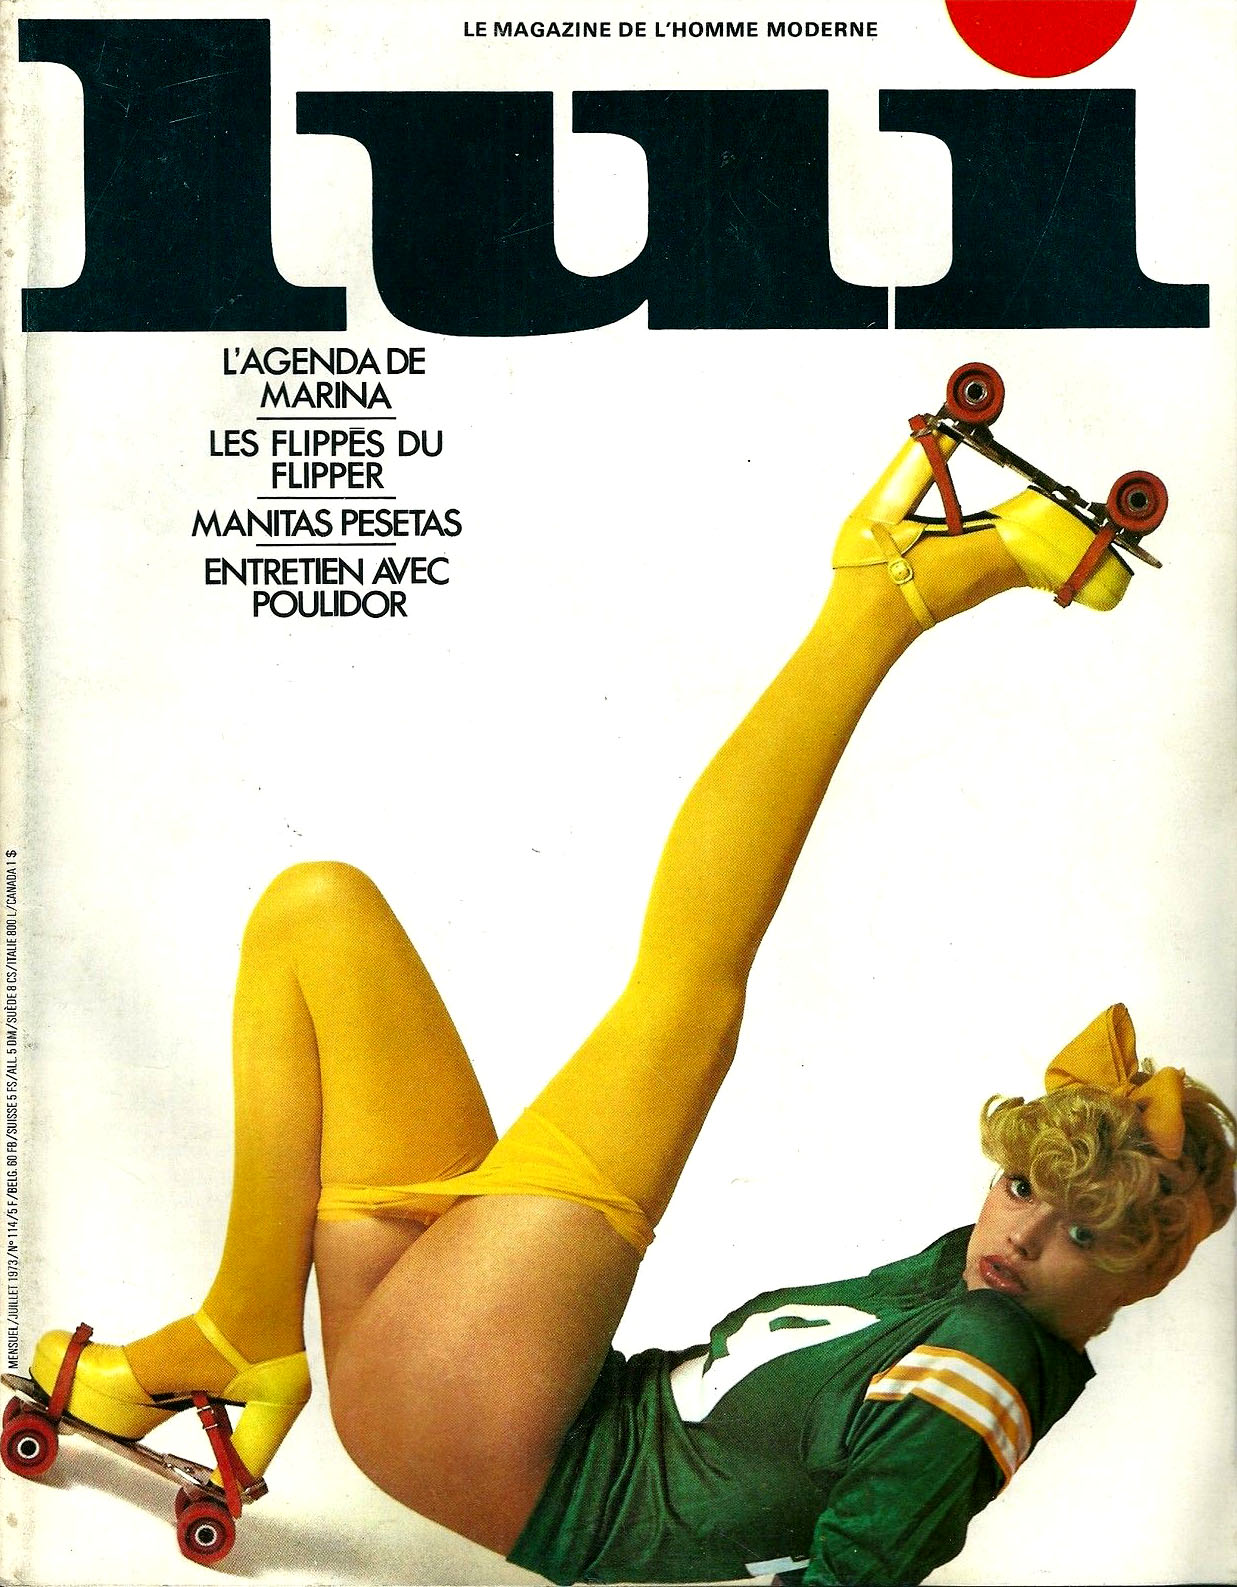 1973 magazine cover roller skates